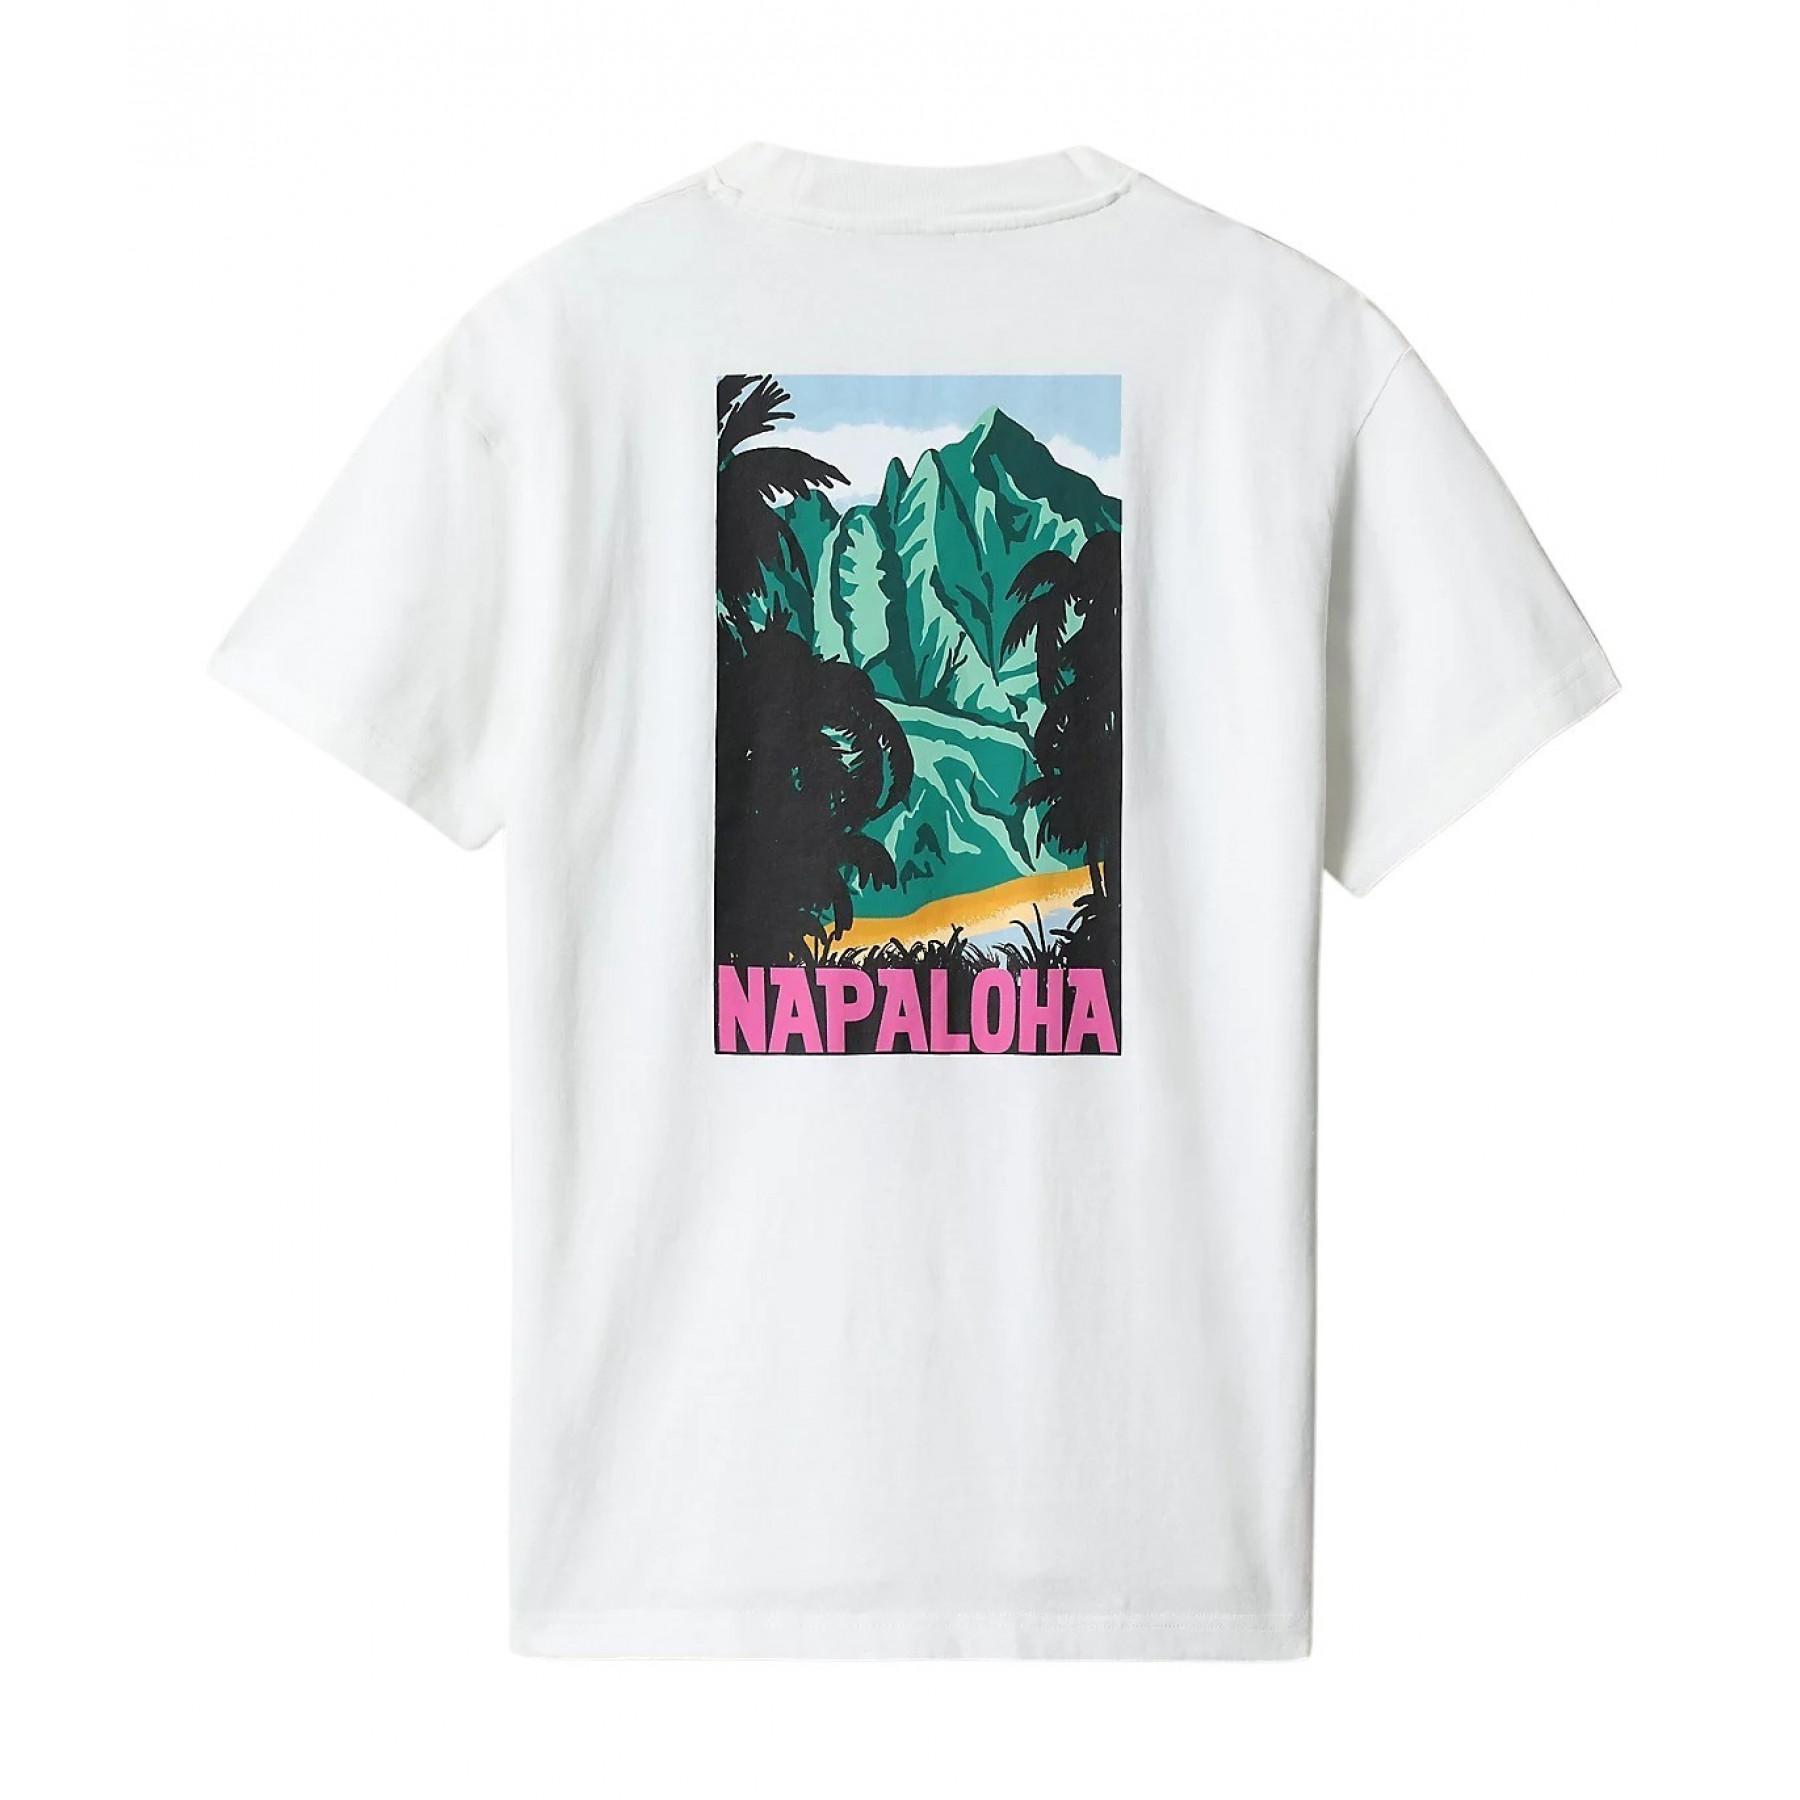 T-shirt Napapijri Aloha